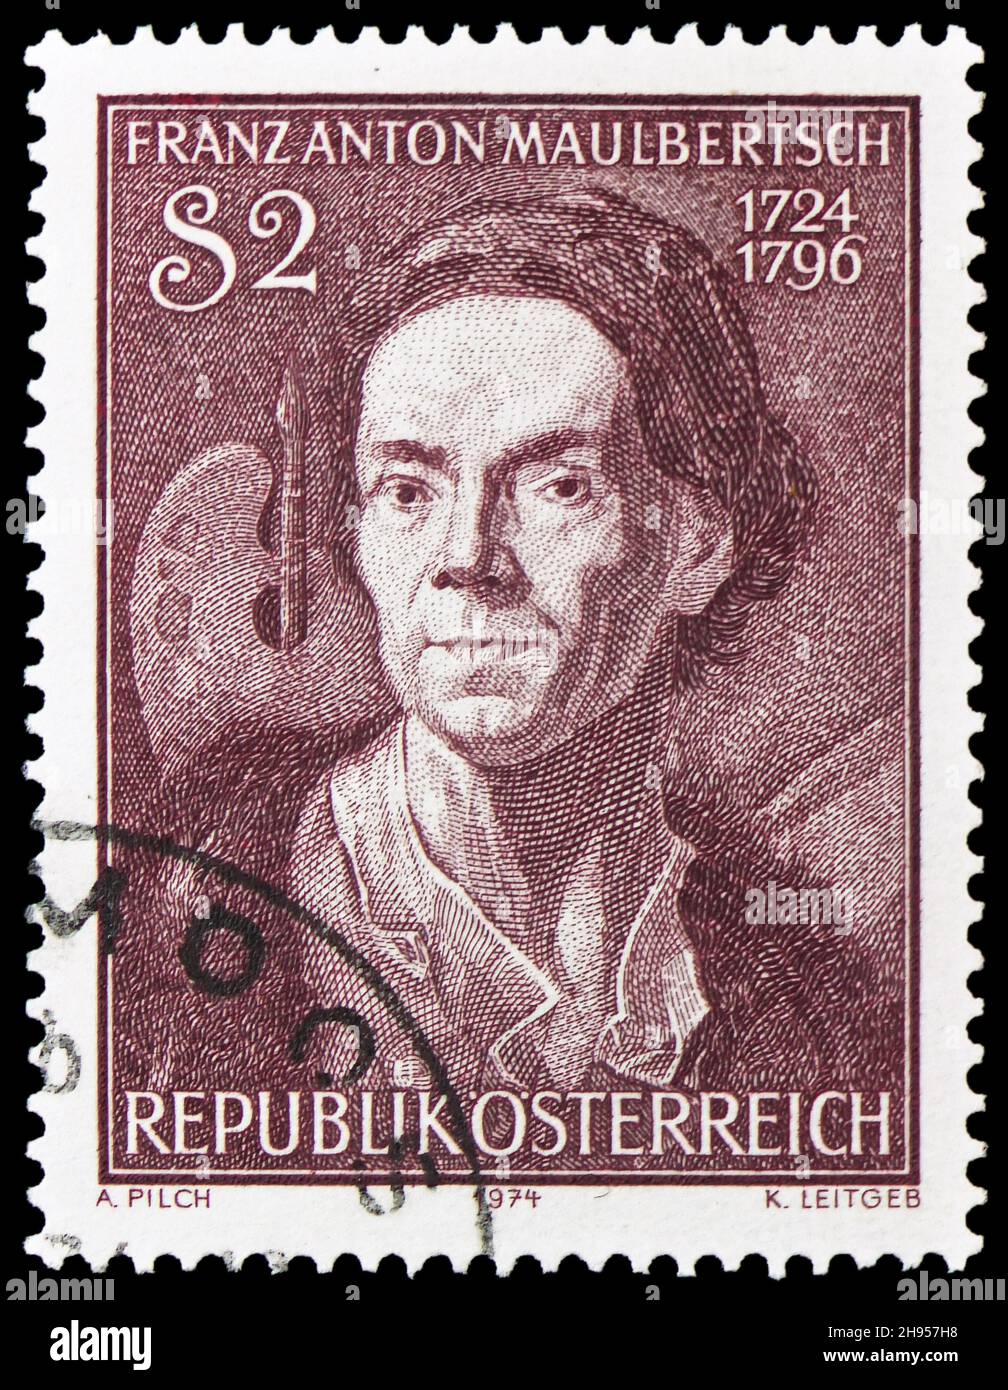 MOSKAU, RUSSLAND - 24. OKTOBER 2021: In Österreich gedruckte Briefmarke zum 250th. Geburtstag von Franz Anton Maulbertsch, um 1974 Stockfoto